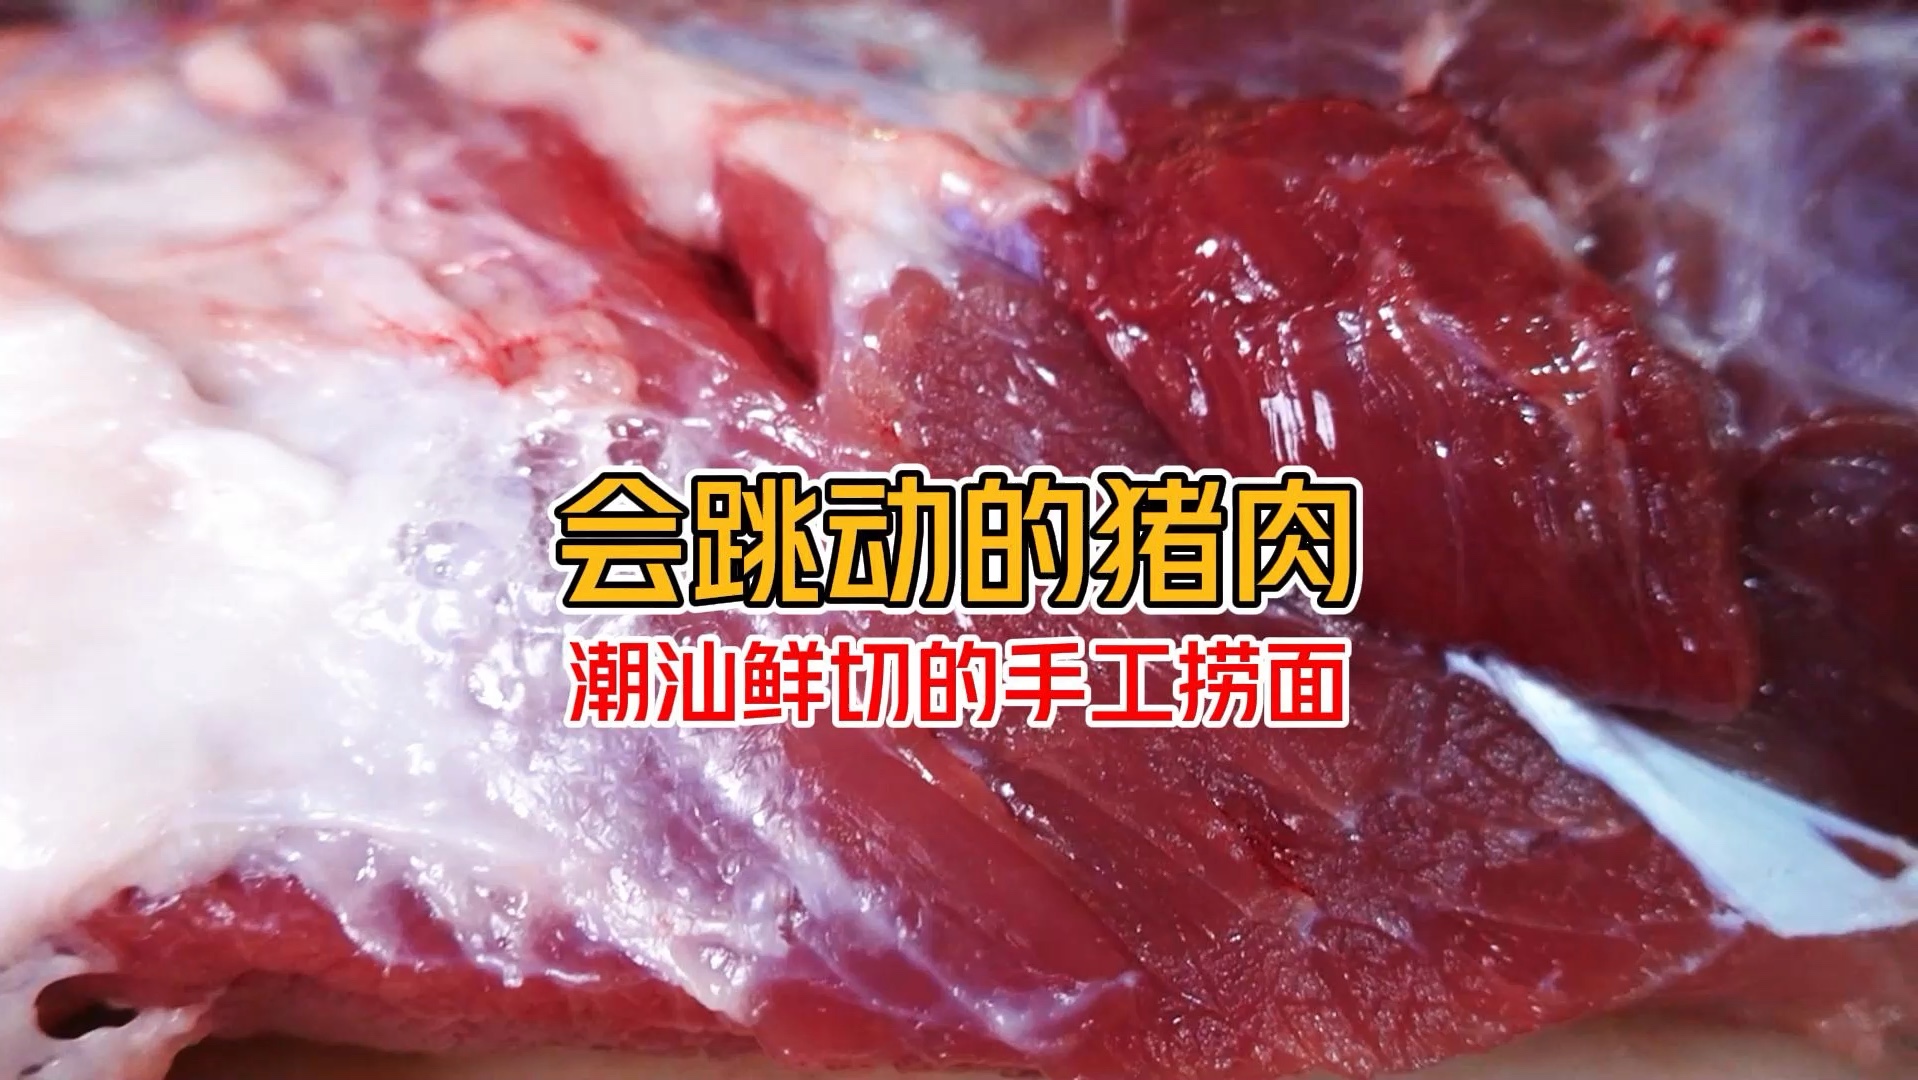 潮汕会跳动的猪肉 大型猪肉现场就为了一碗鲜肉捞面